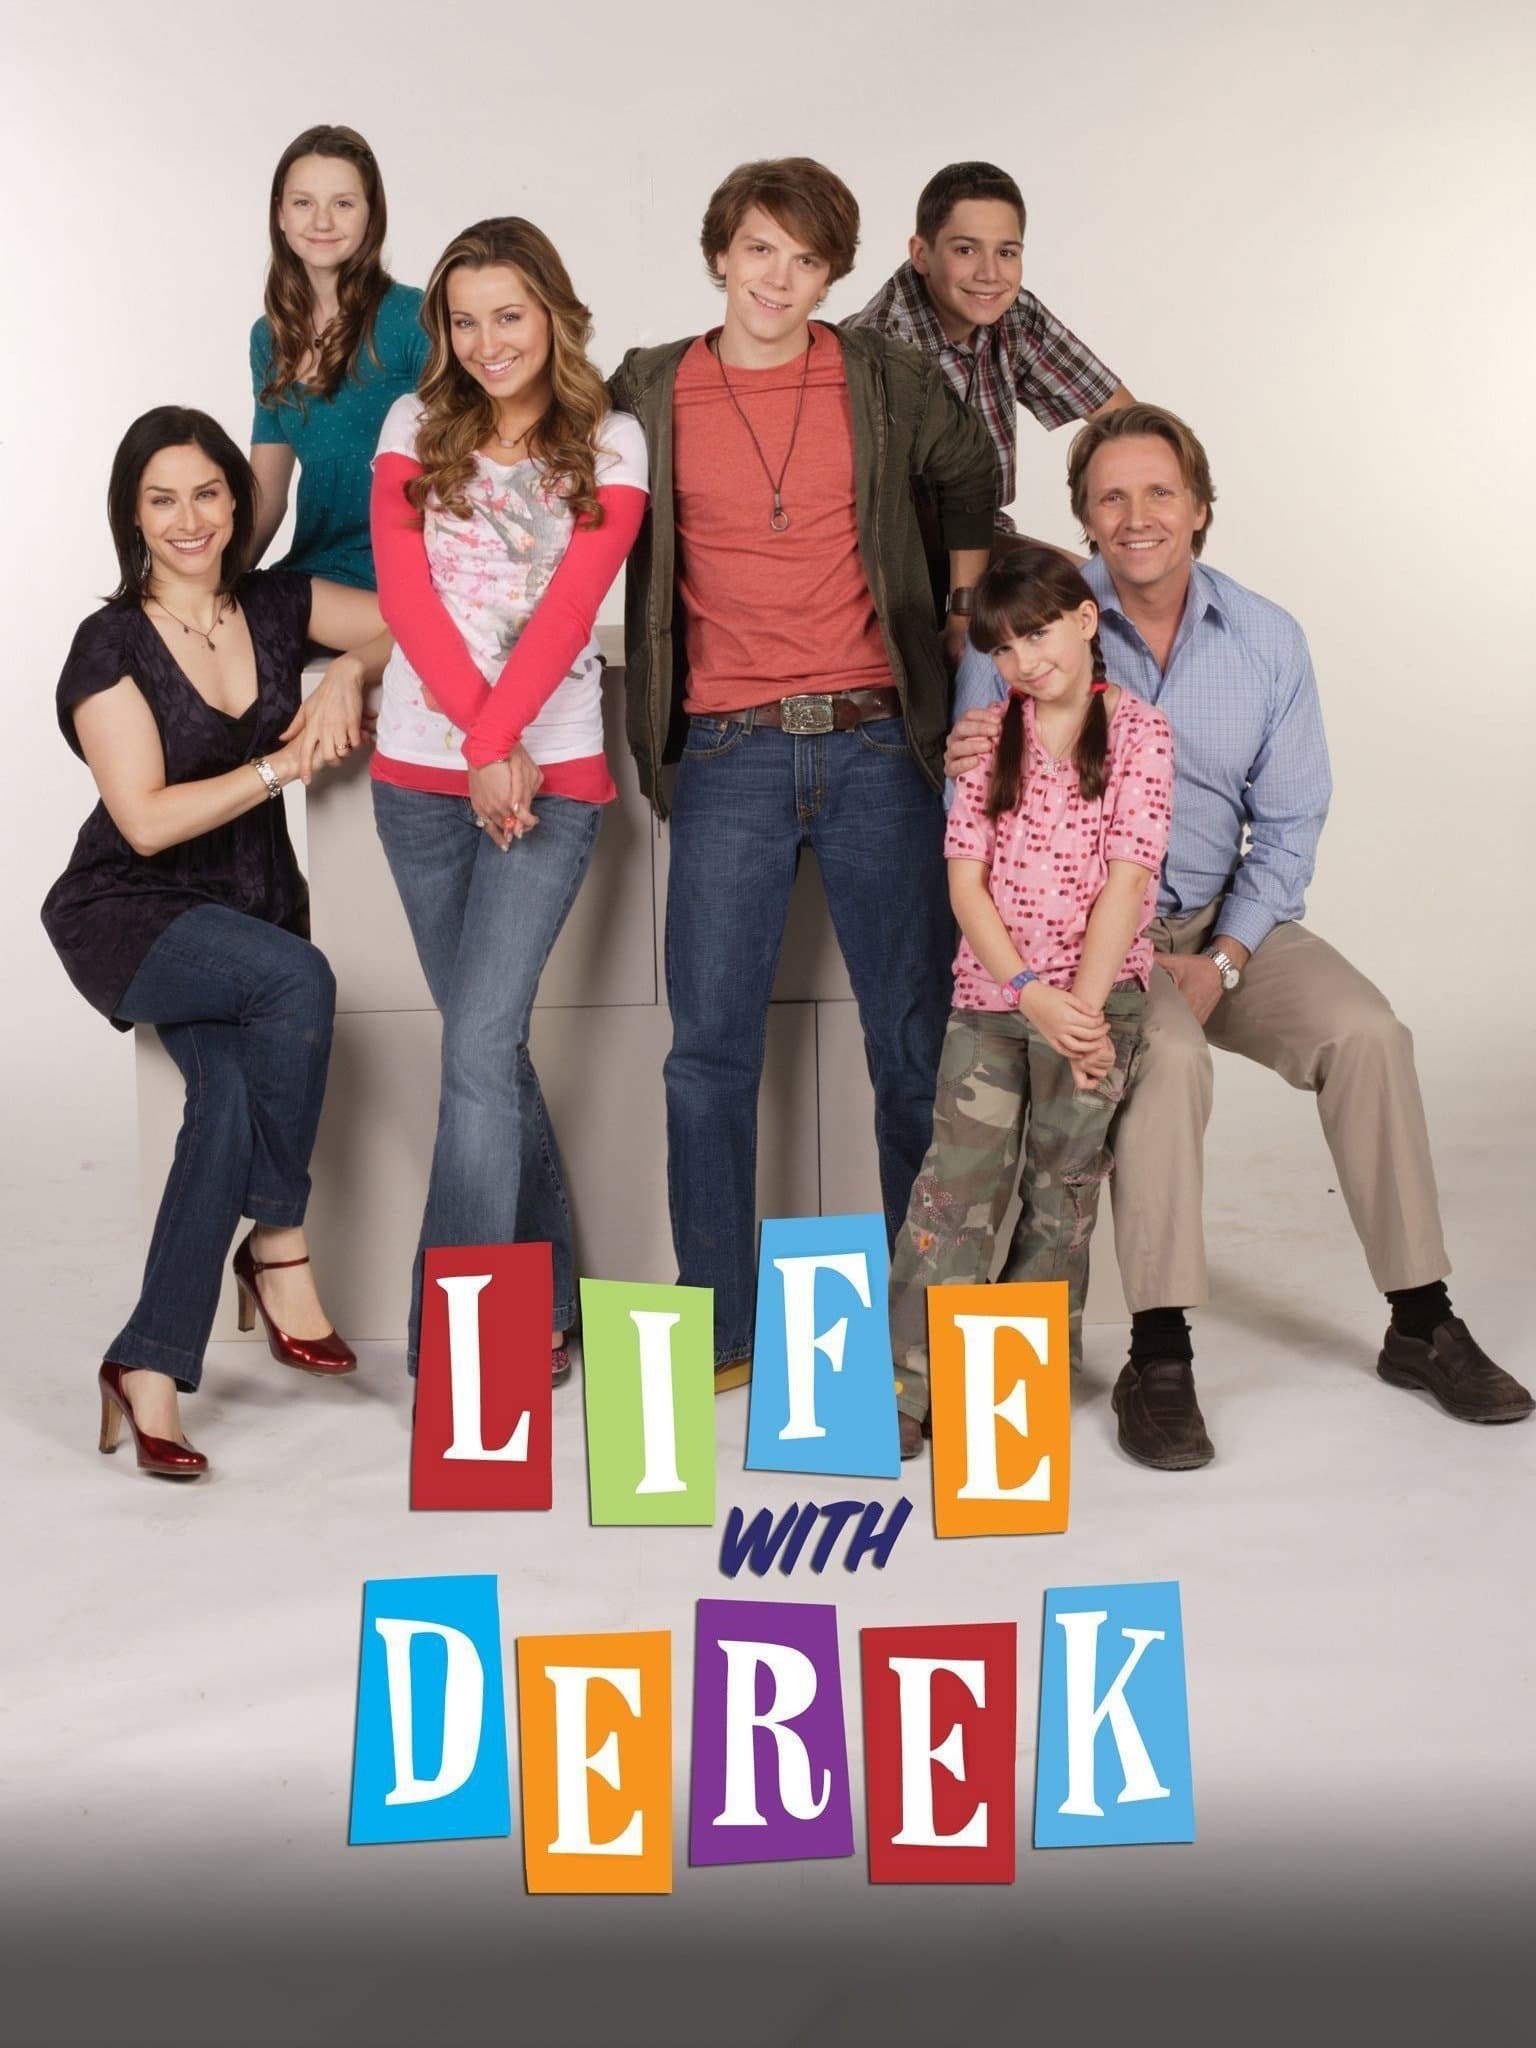 Minha Vida com Derek (2005)